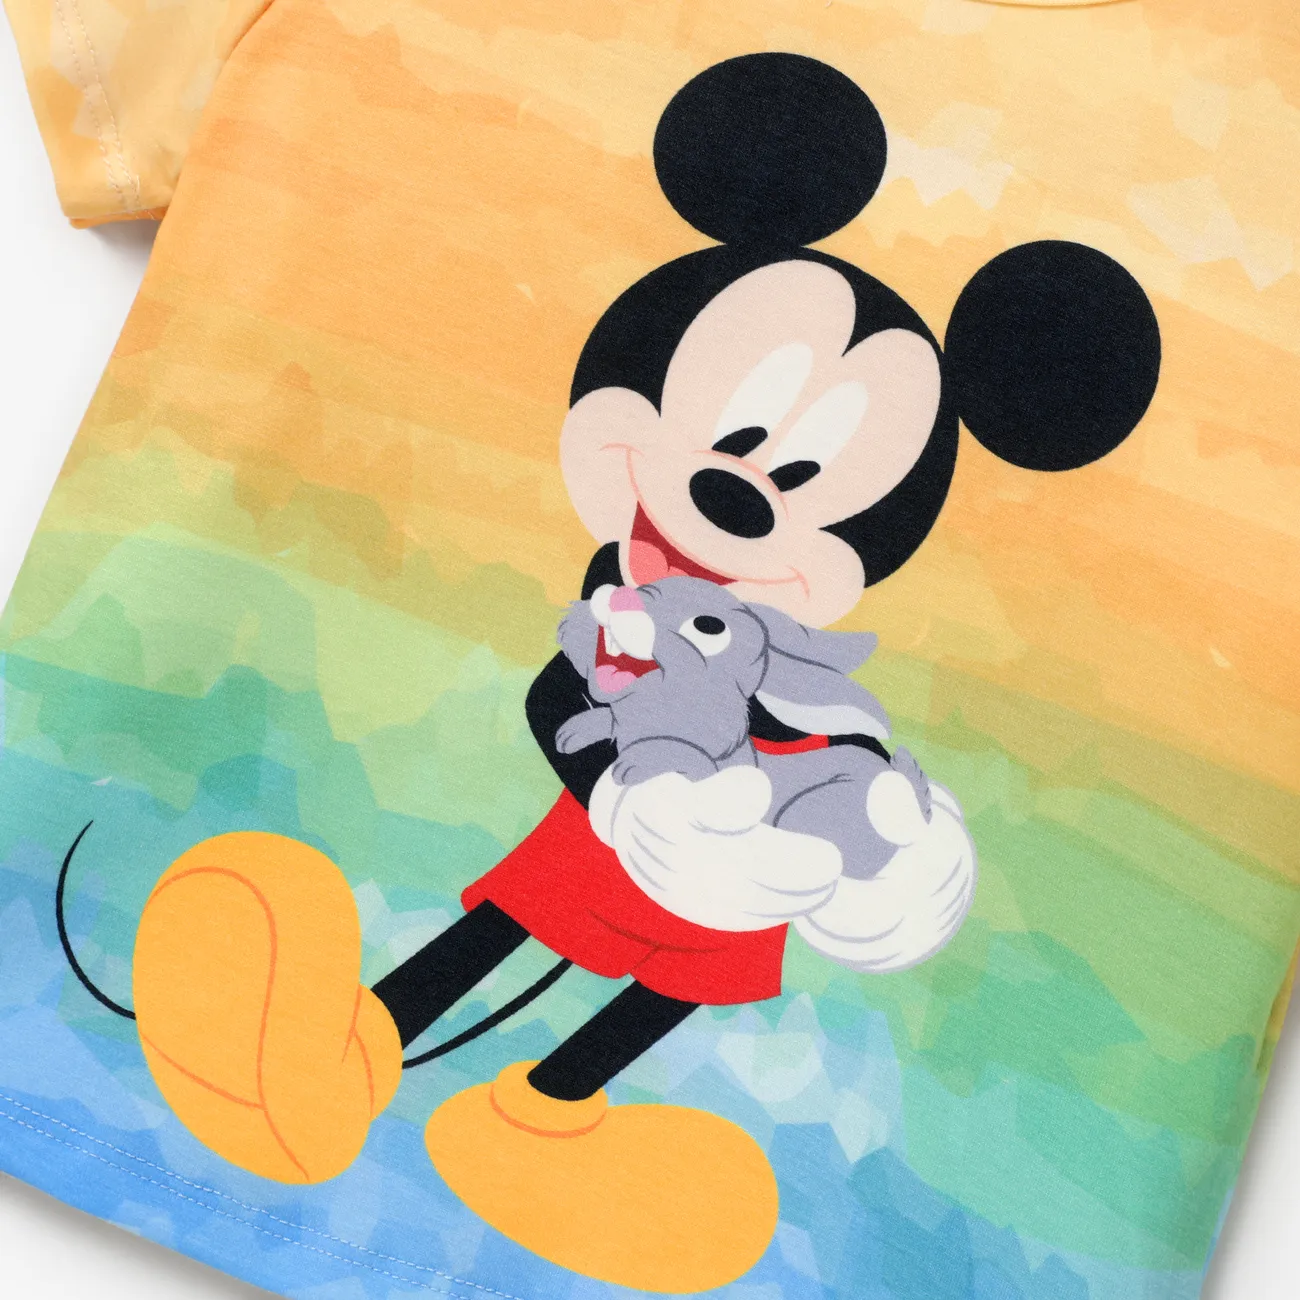 Disney Mickey and Friends Ostern Kleinkinder Unisex Kindlich Kurzärmelig T-Shirts Farbblock big image 1